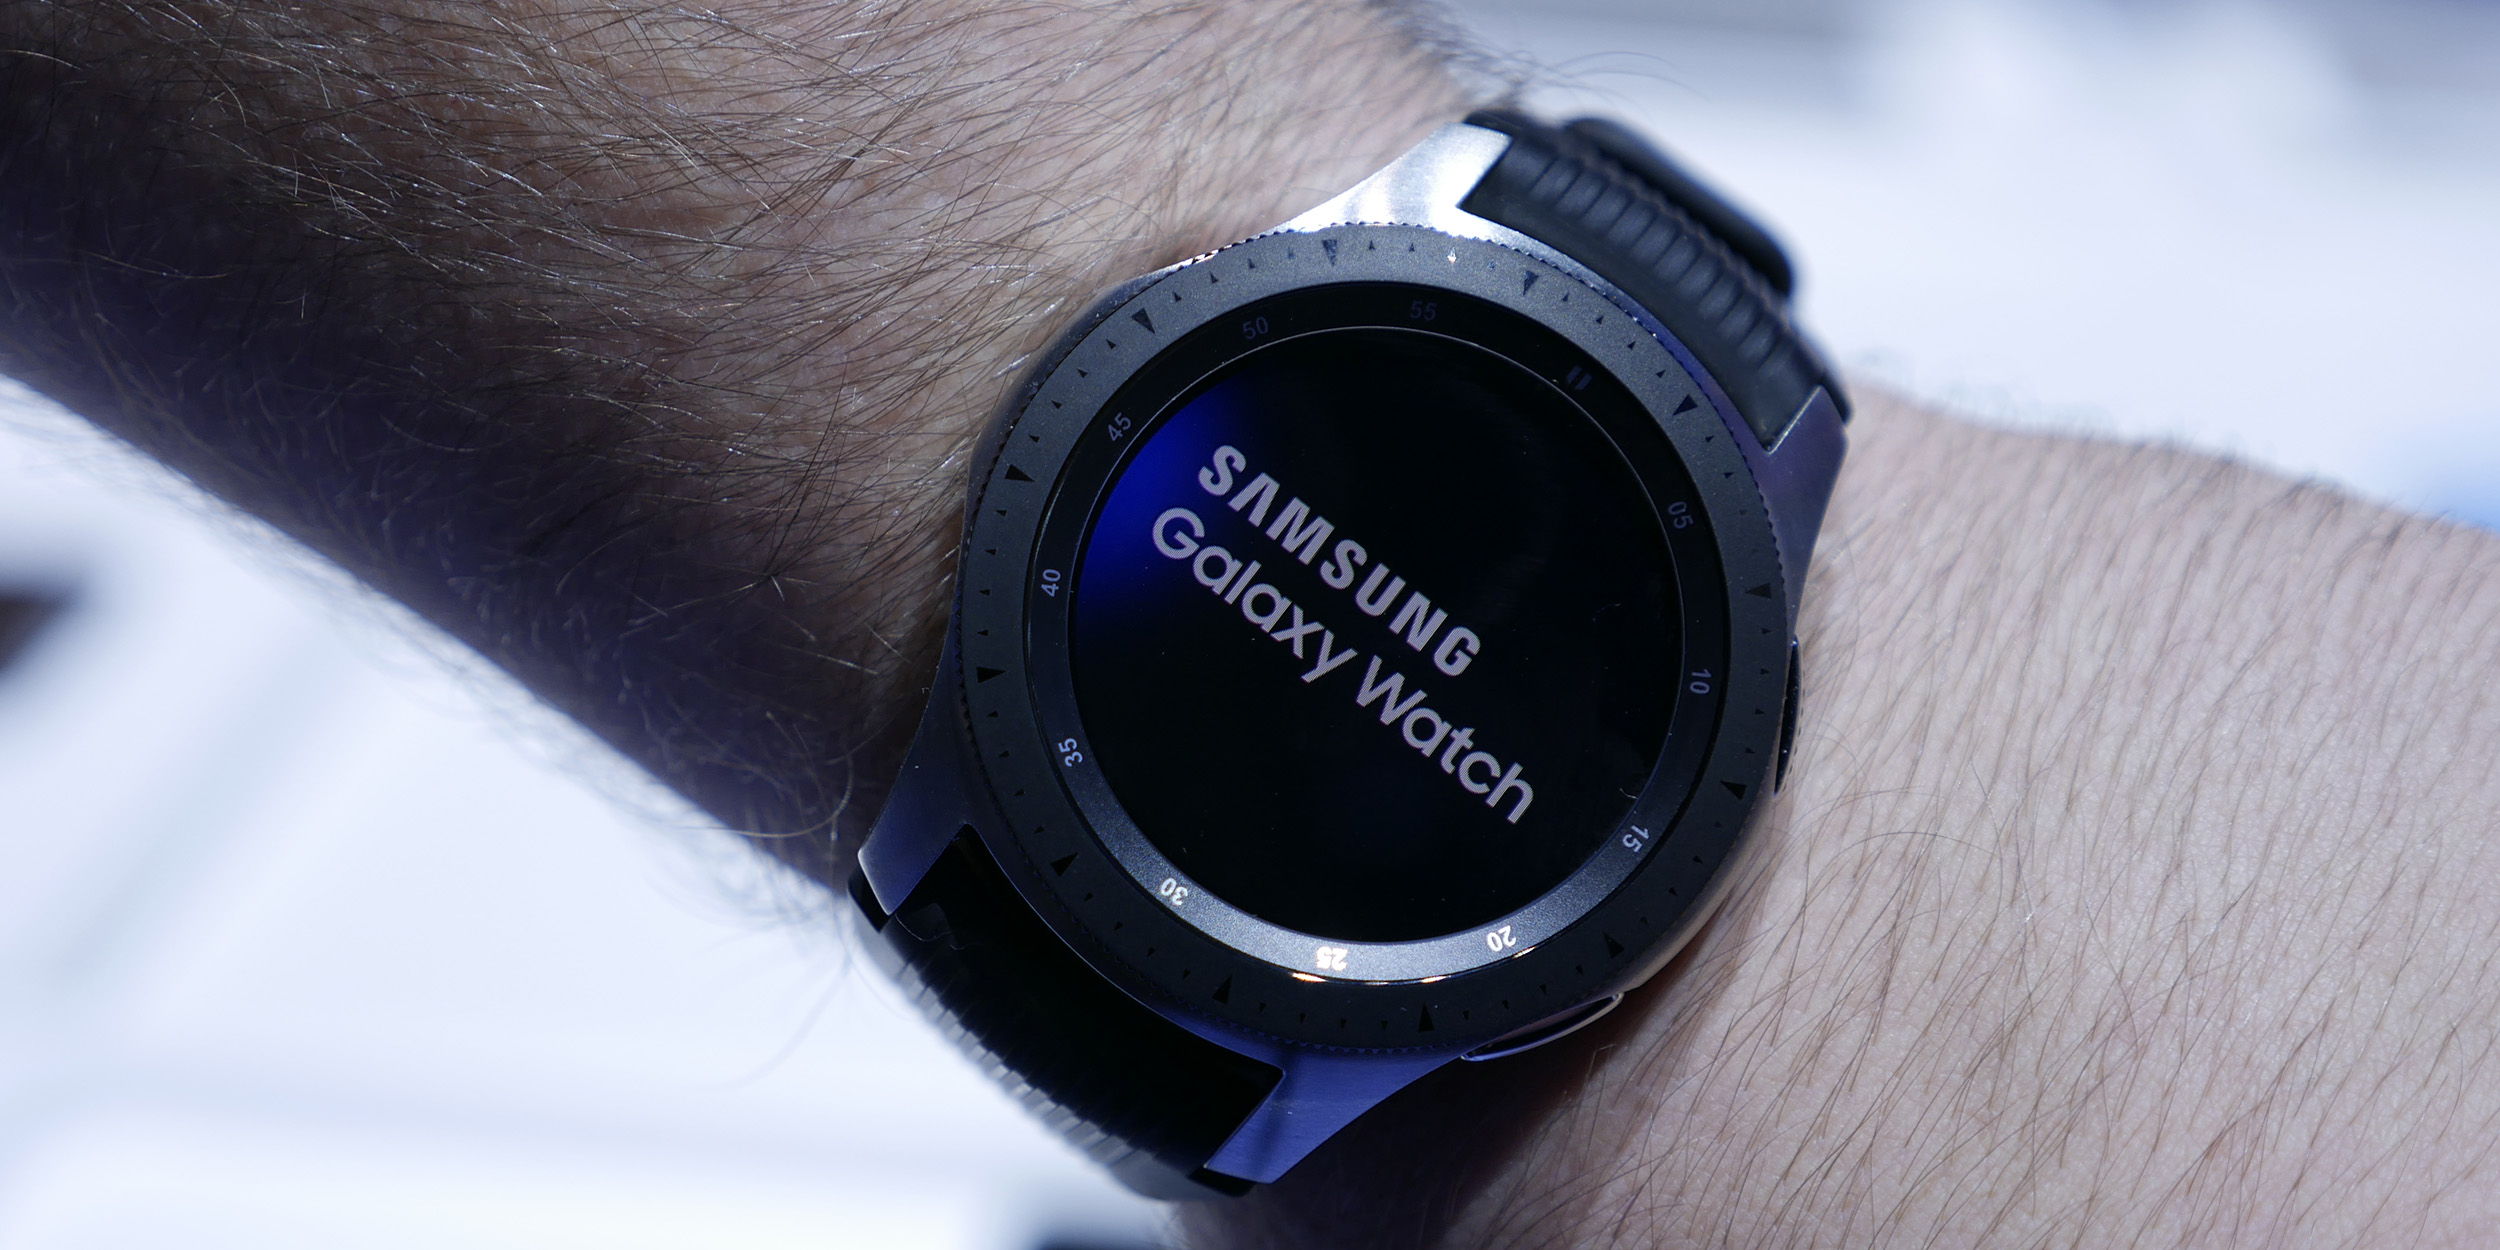 Samsung Galaxy Watch hands-on: The best 